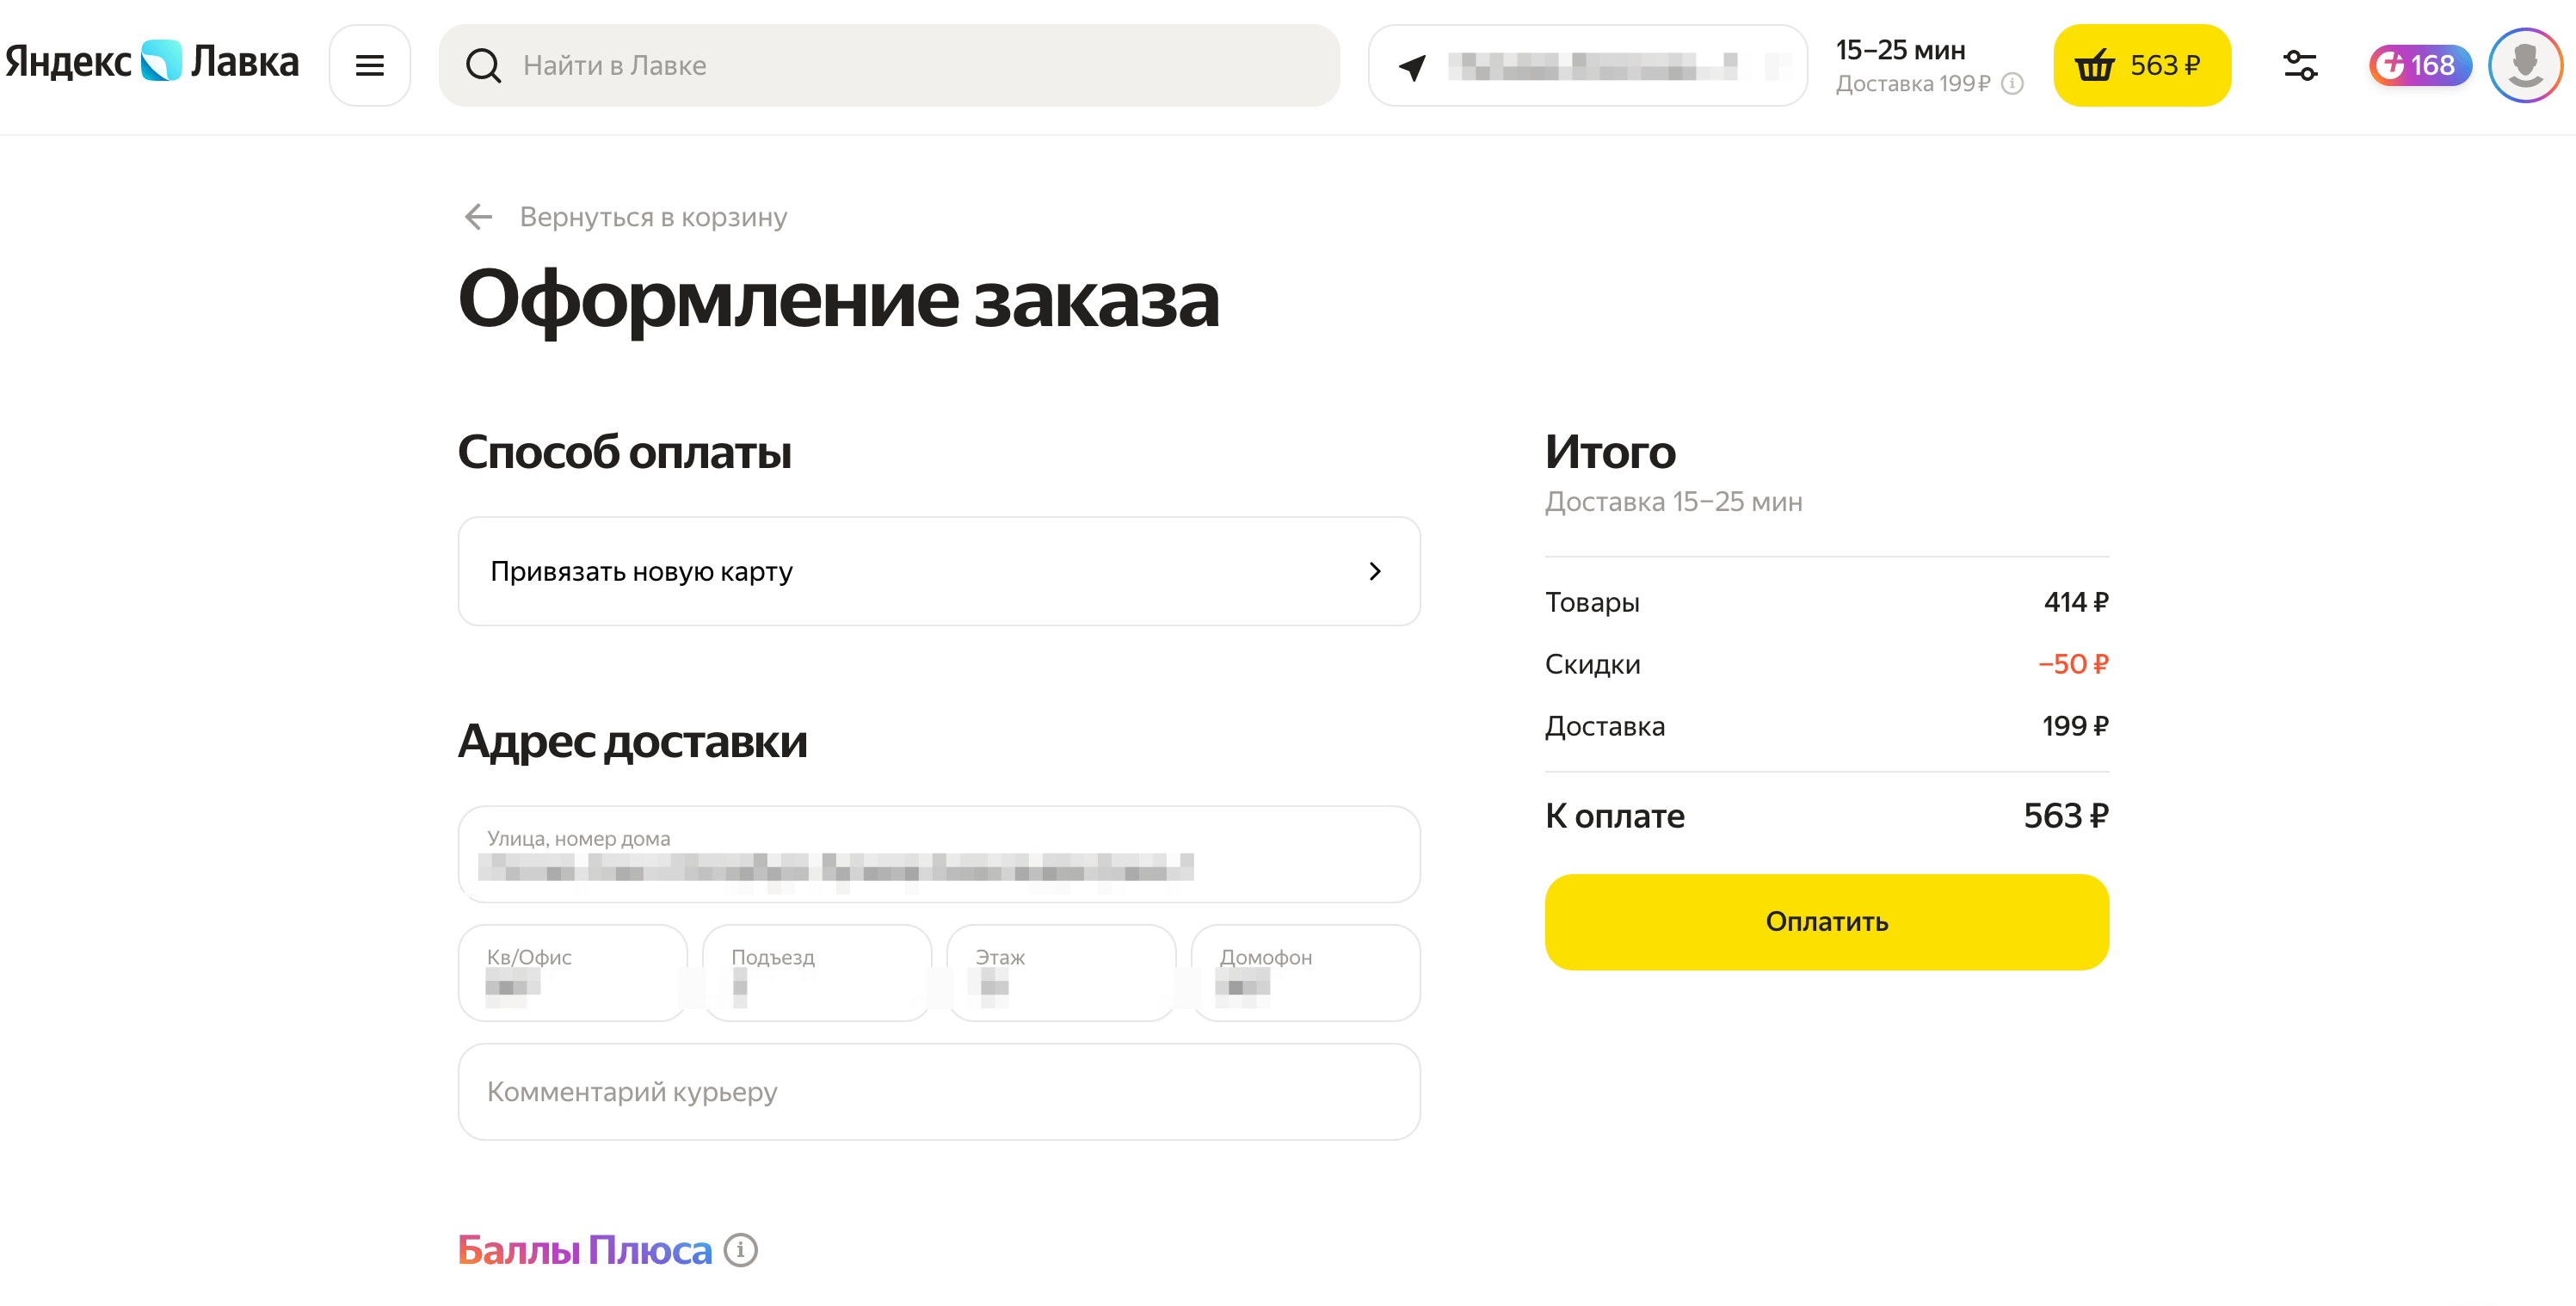 Яндекс Лавка — заказать продукты с быстрой доставкой